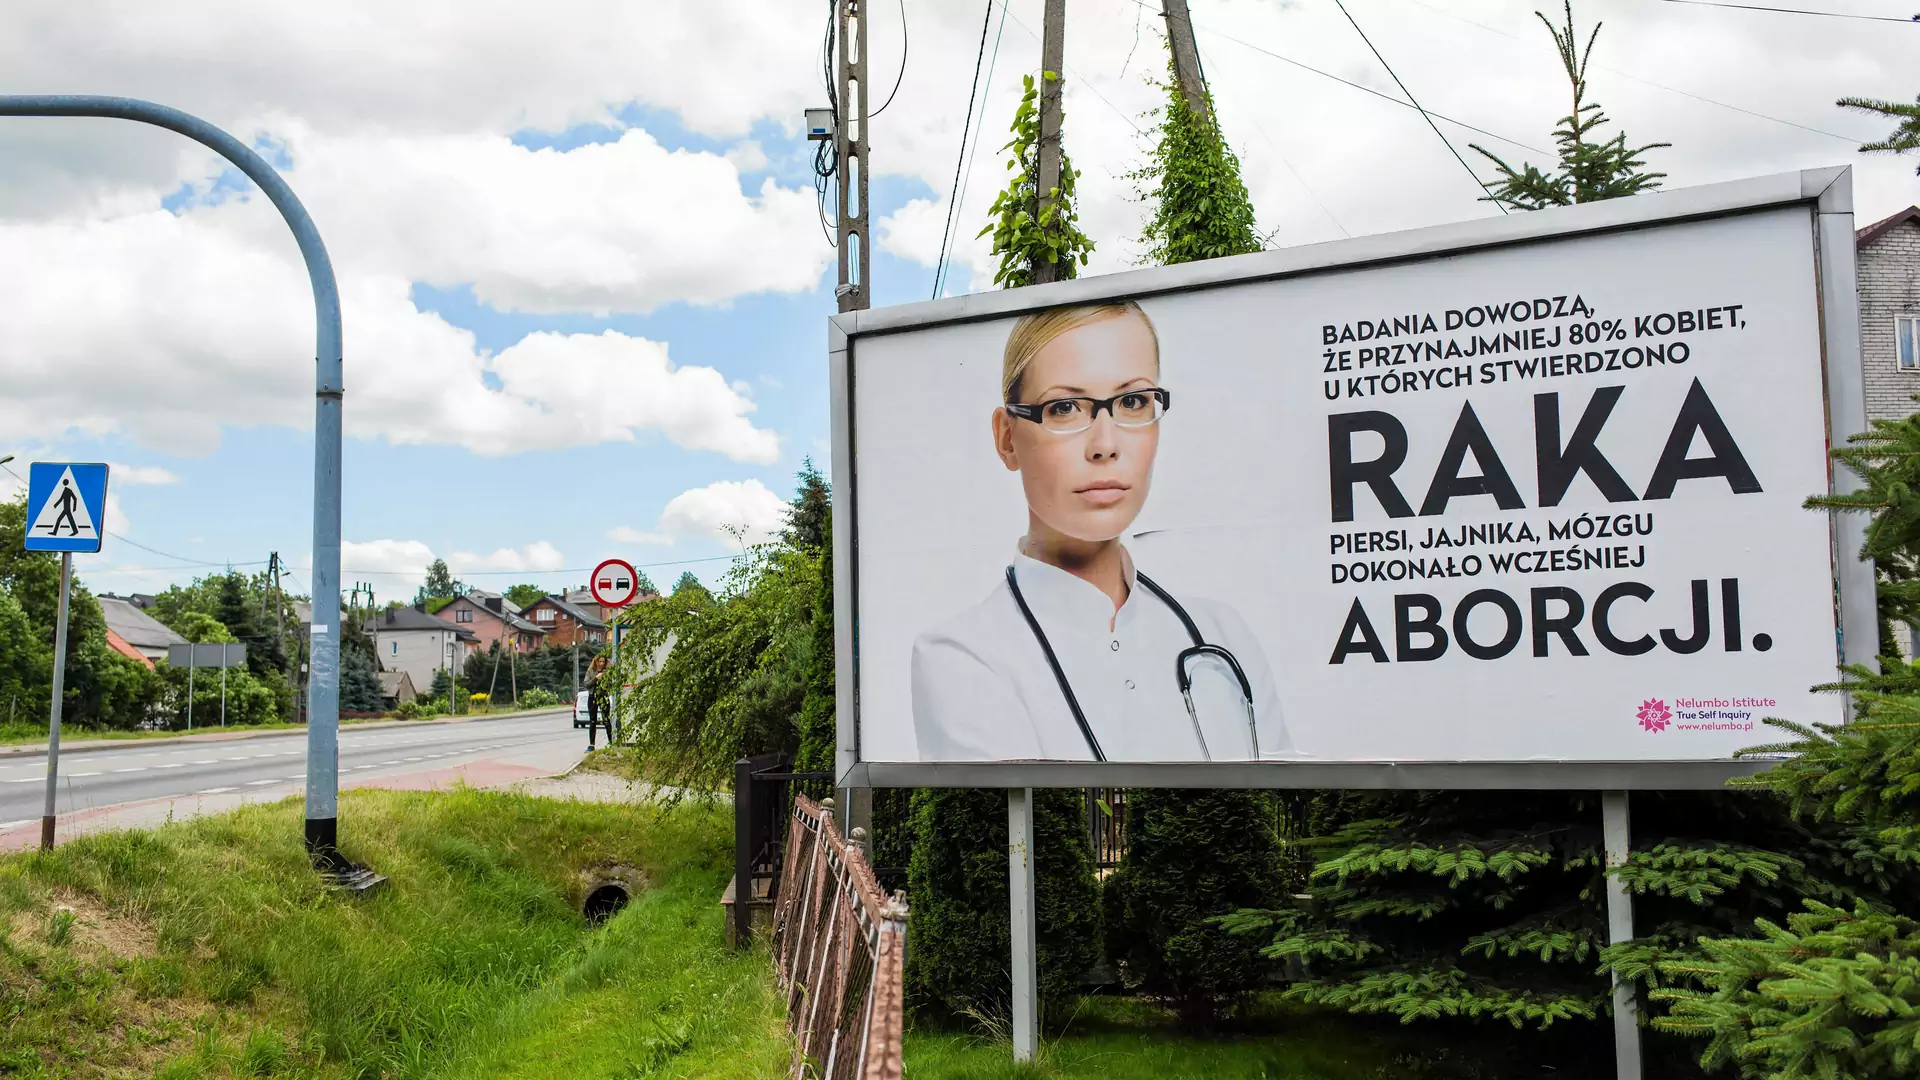 Skandaliczny billboard pod Krakowem. Sugerują związek aborcji z nowotworem